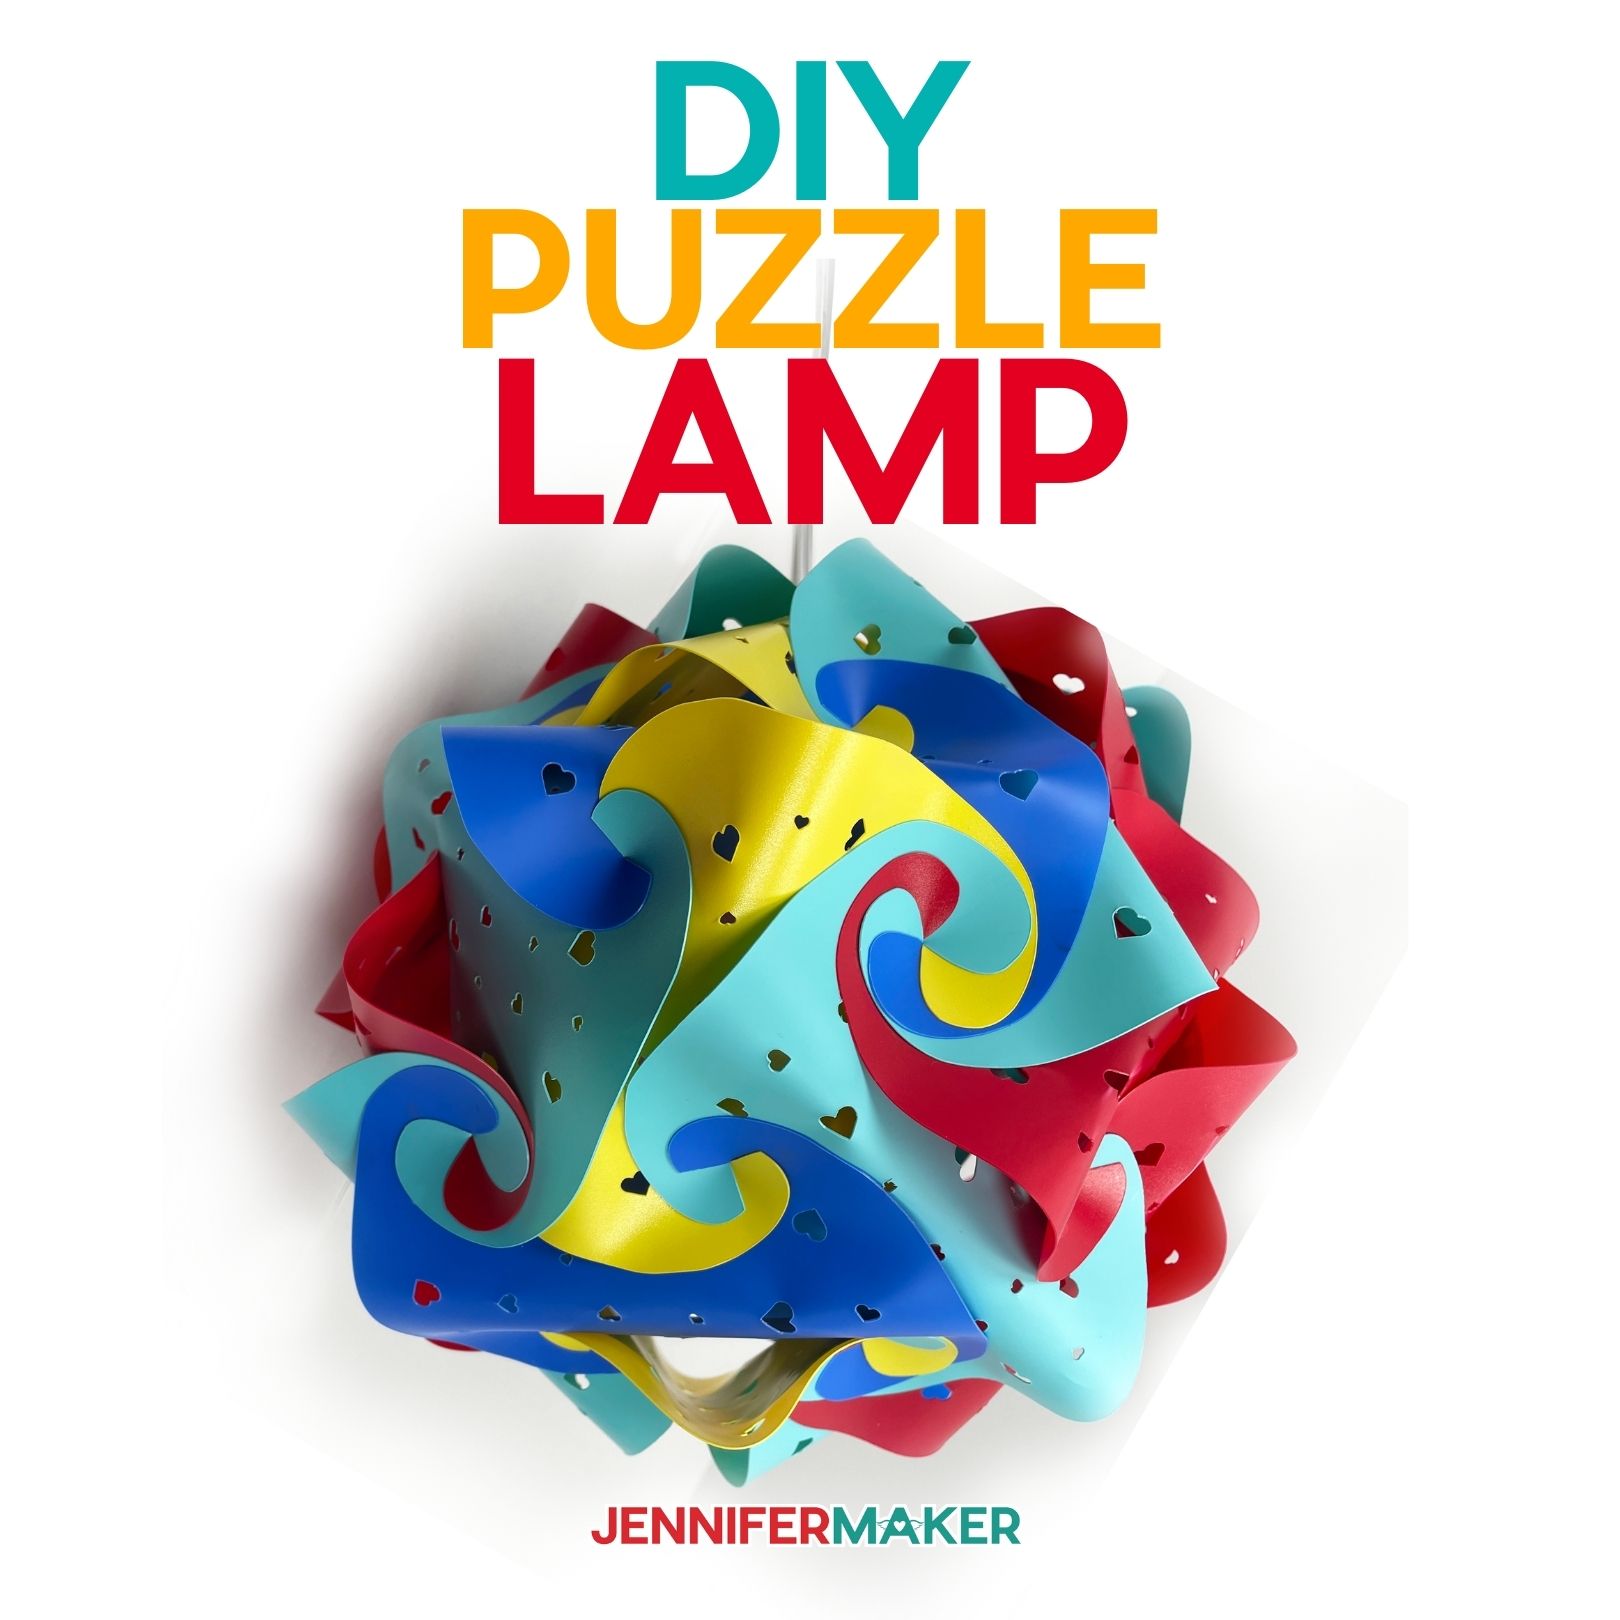 DIY Puzzle Lamp: Let’s Make a Fun IQ Lamp!